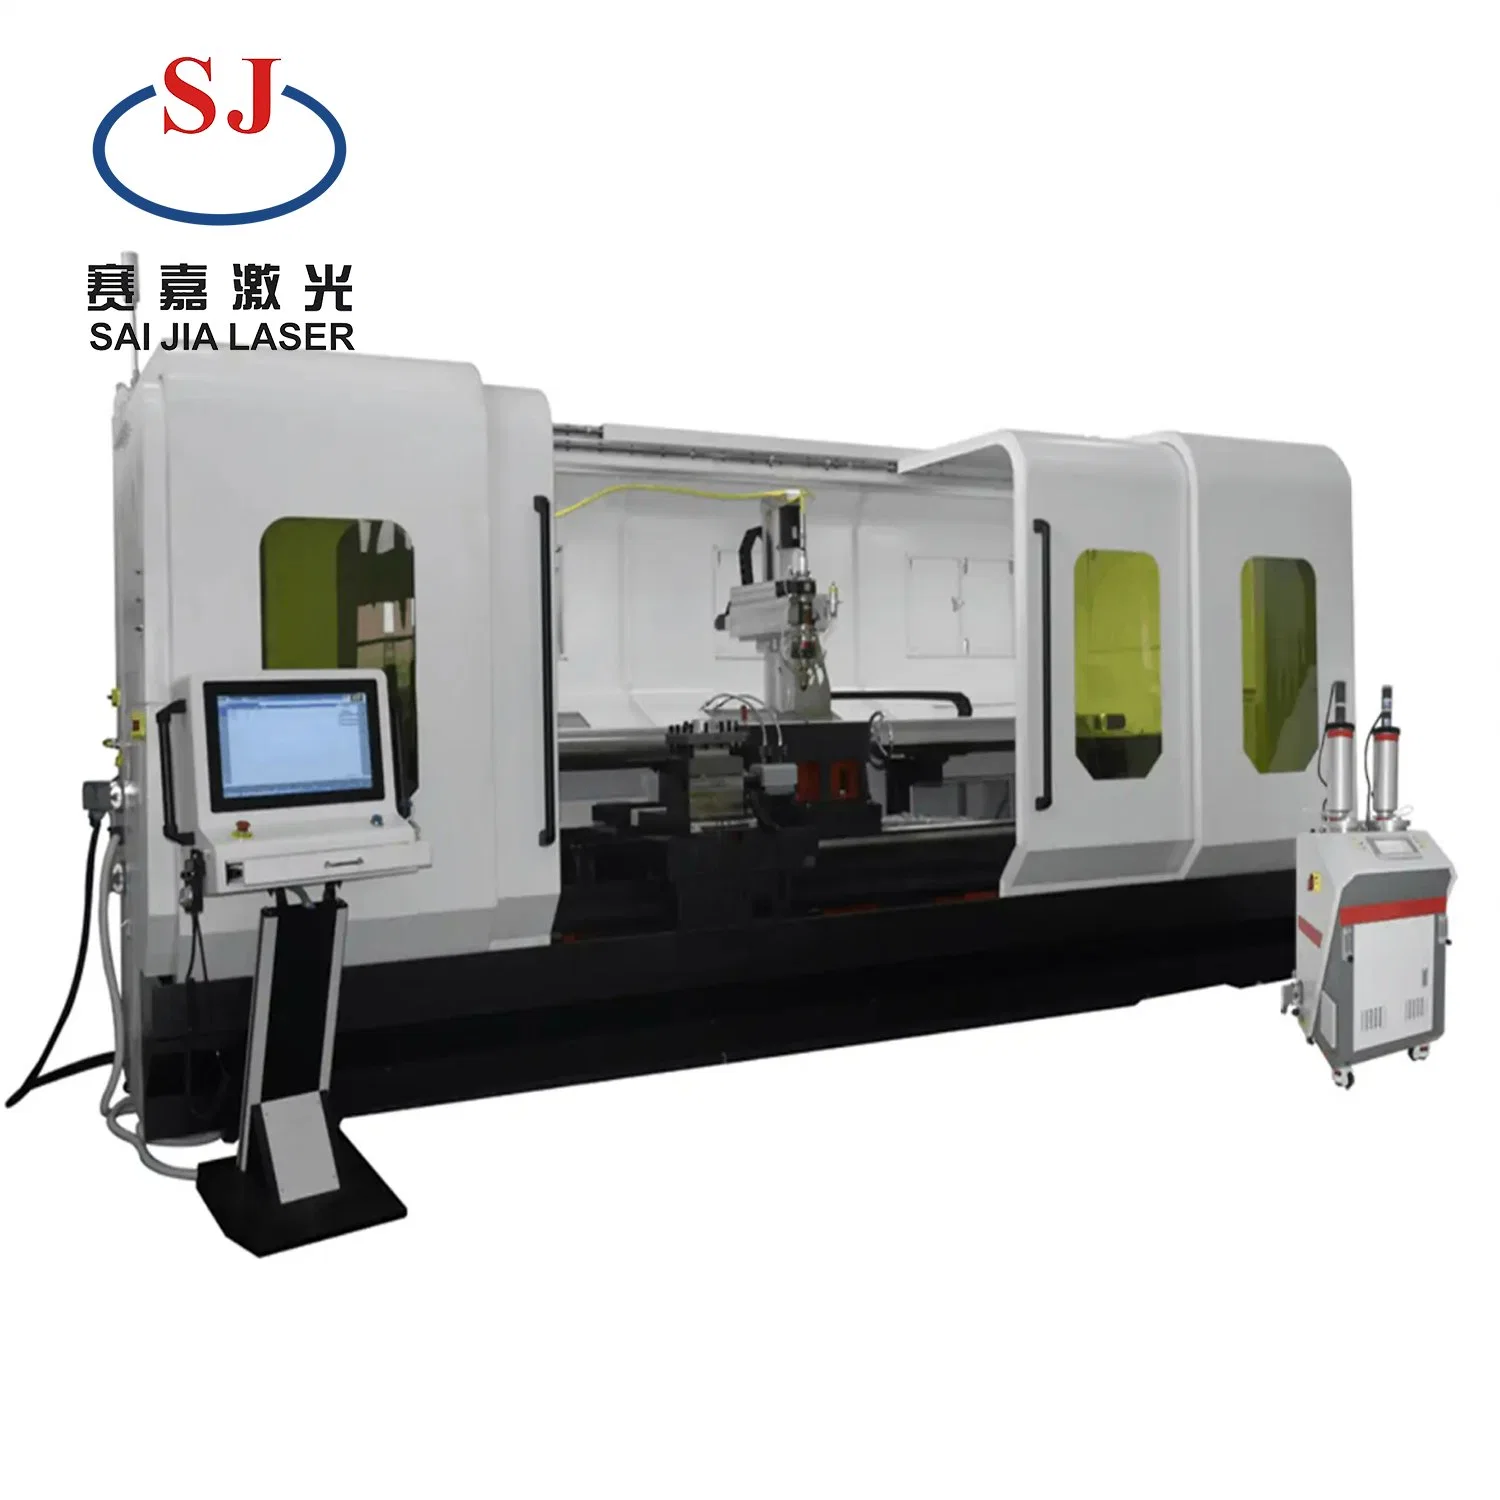 Personalización de la muestra de producto caliente High-Accuracy revestimiento láser CNC máquina soldadora láser/.